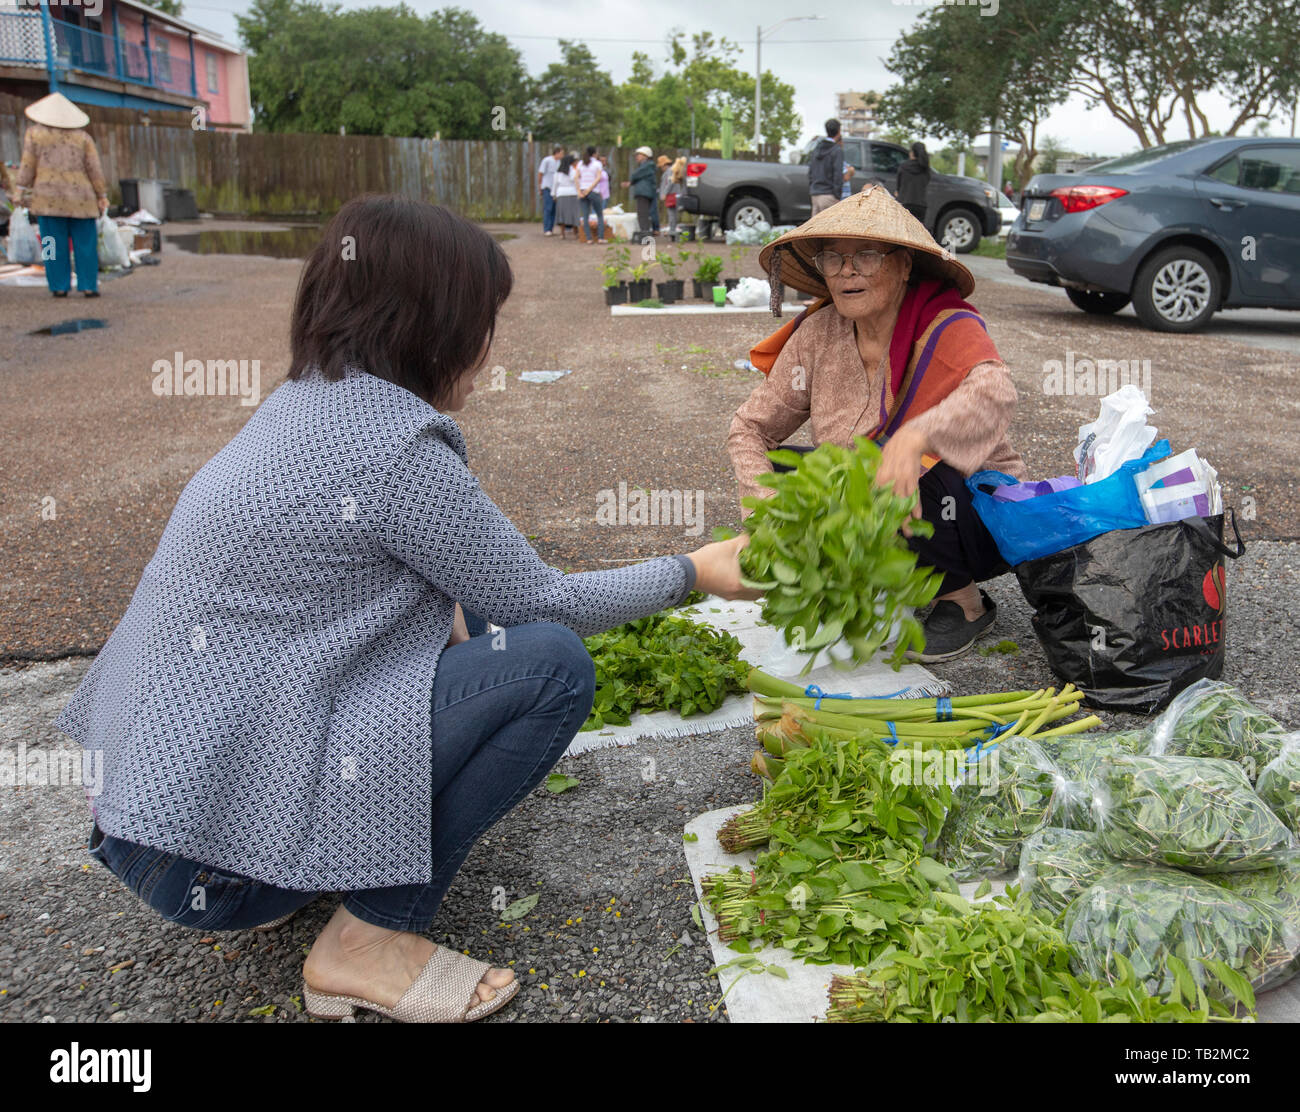 La Nouvelle-Orléans, Louisiane - un marché d'agriculteurs vietnamiens, maintenue pendant quelques heures plus tôt samedi matin dans un parking de la ville, la communauté vietnamienne Banque D'Images